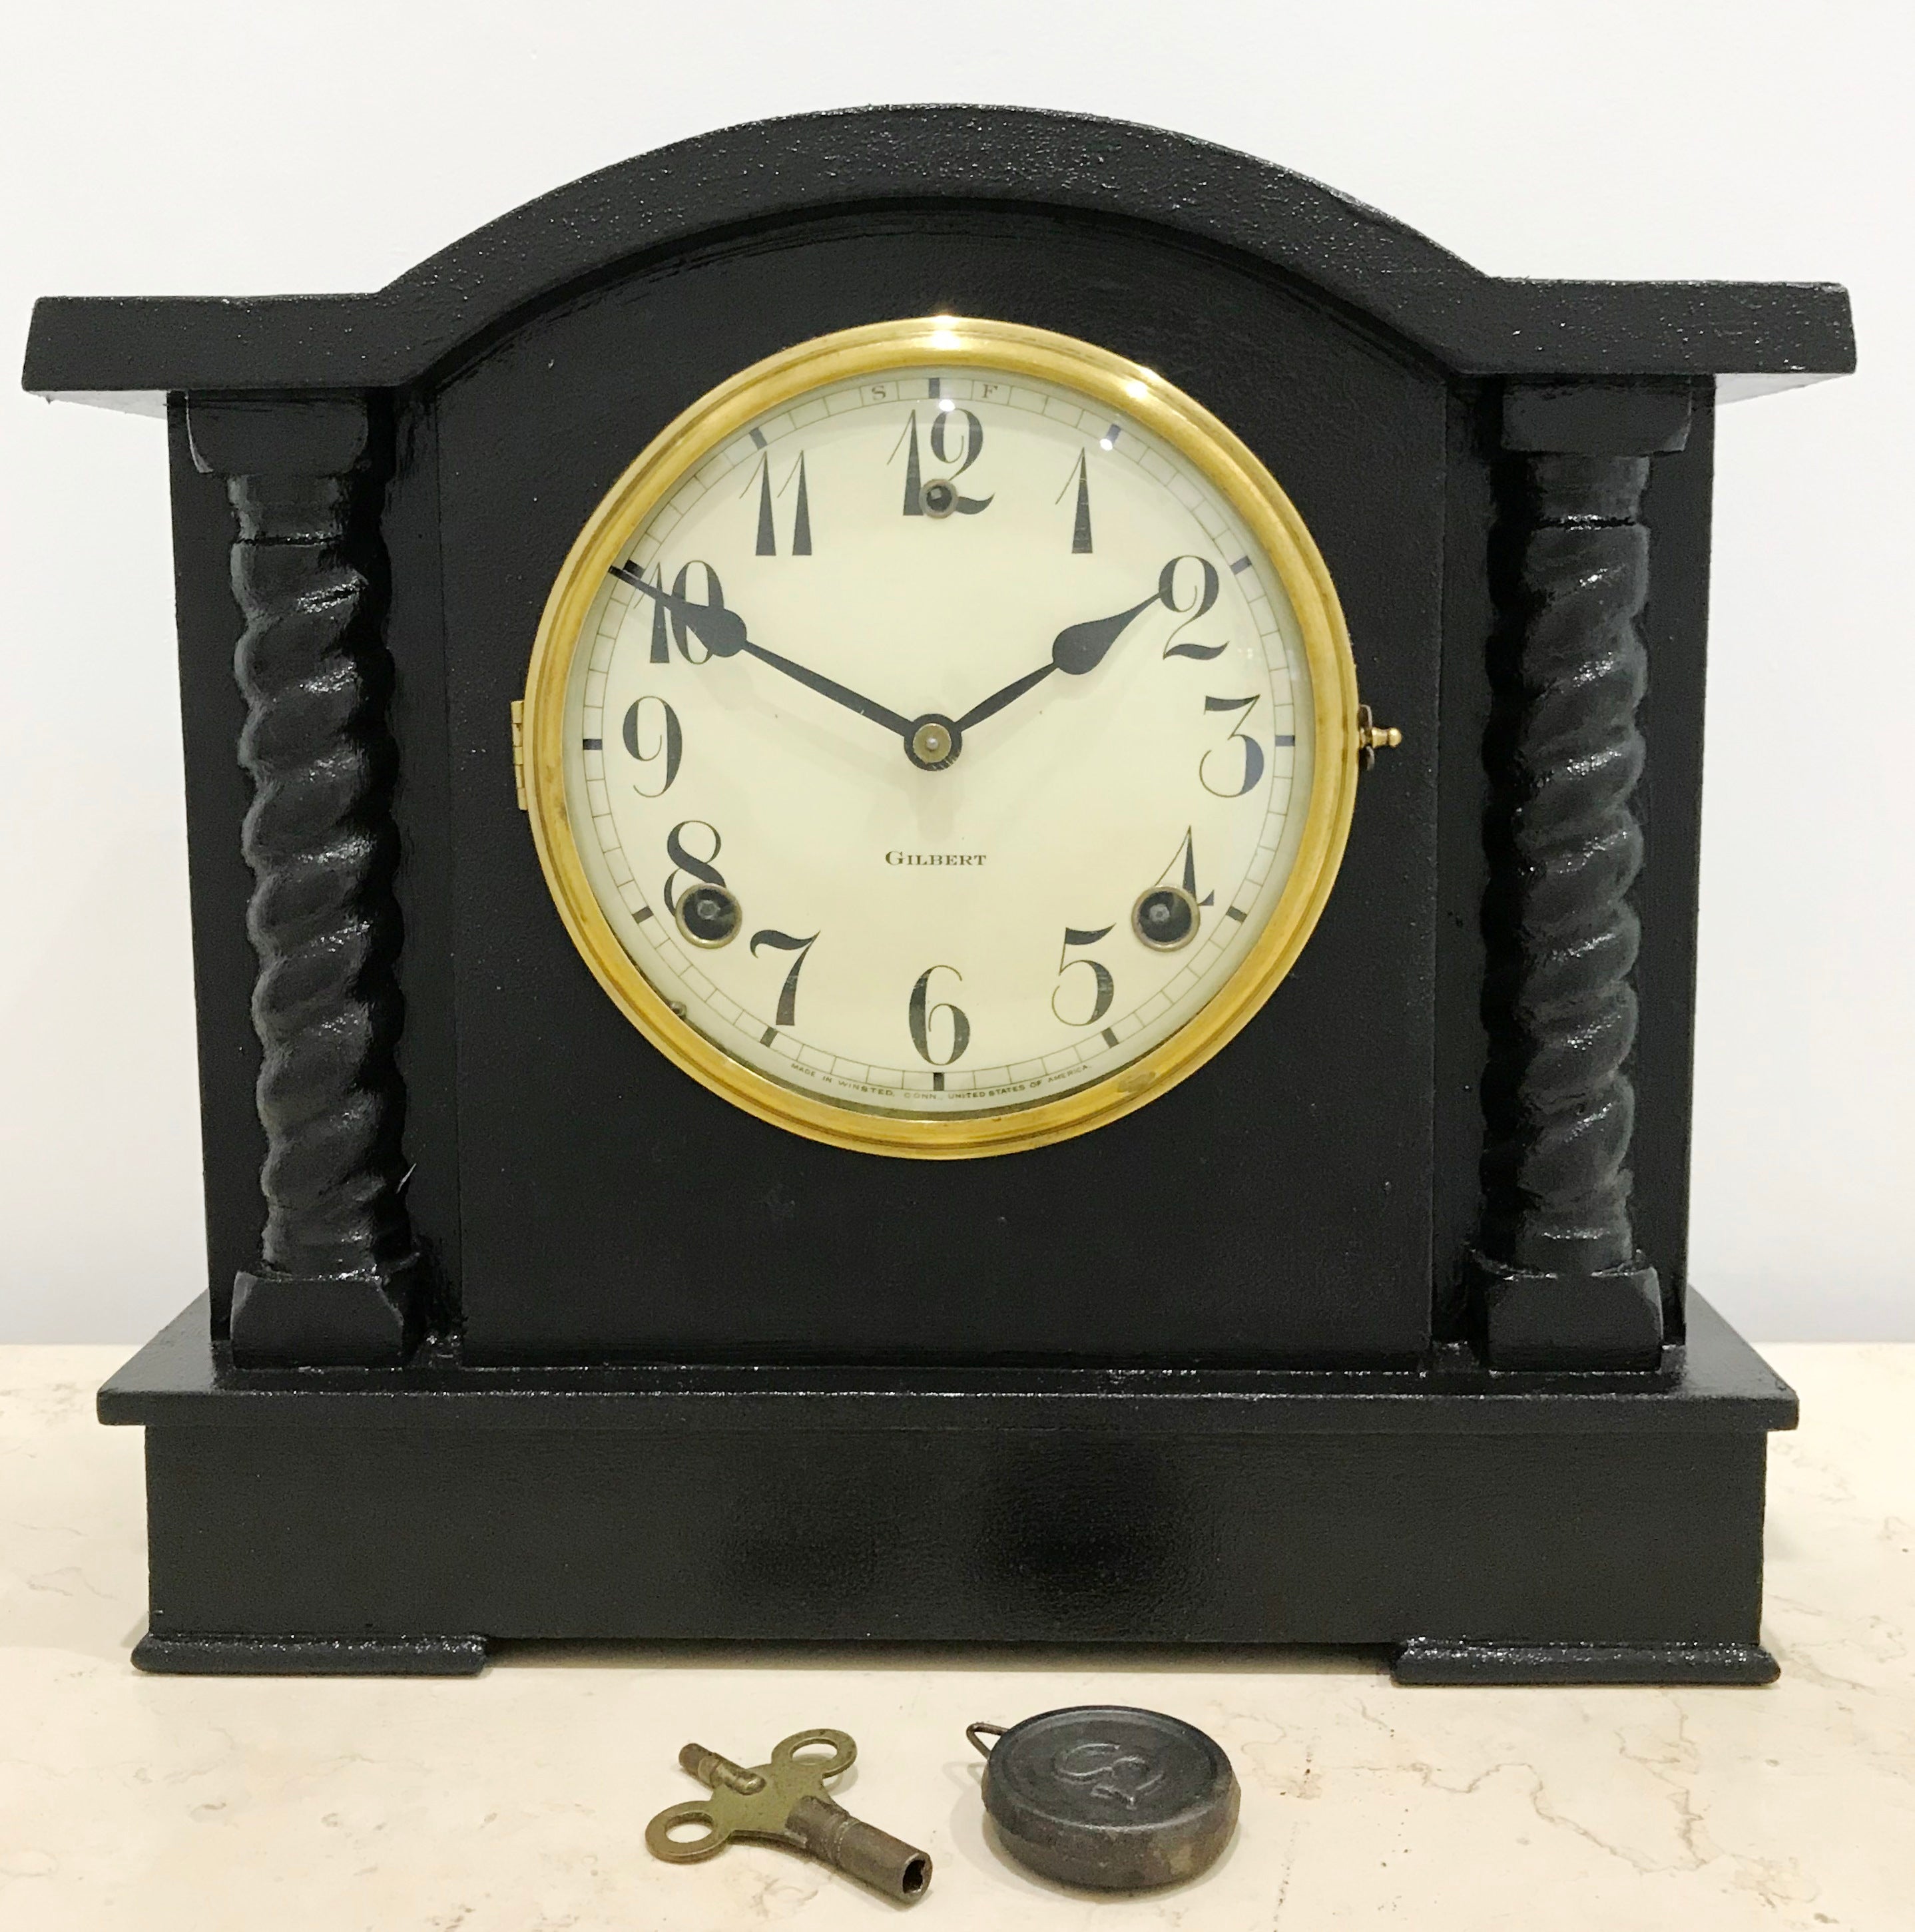 Restored Original Gilbert Mantel Clock | eXibit collection